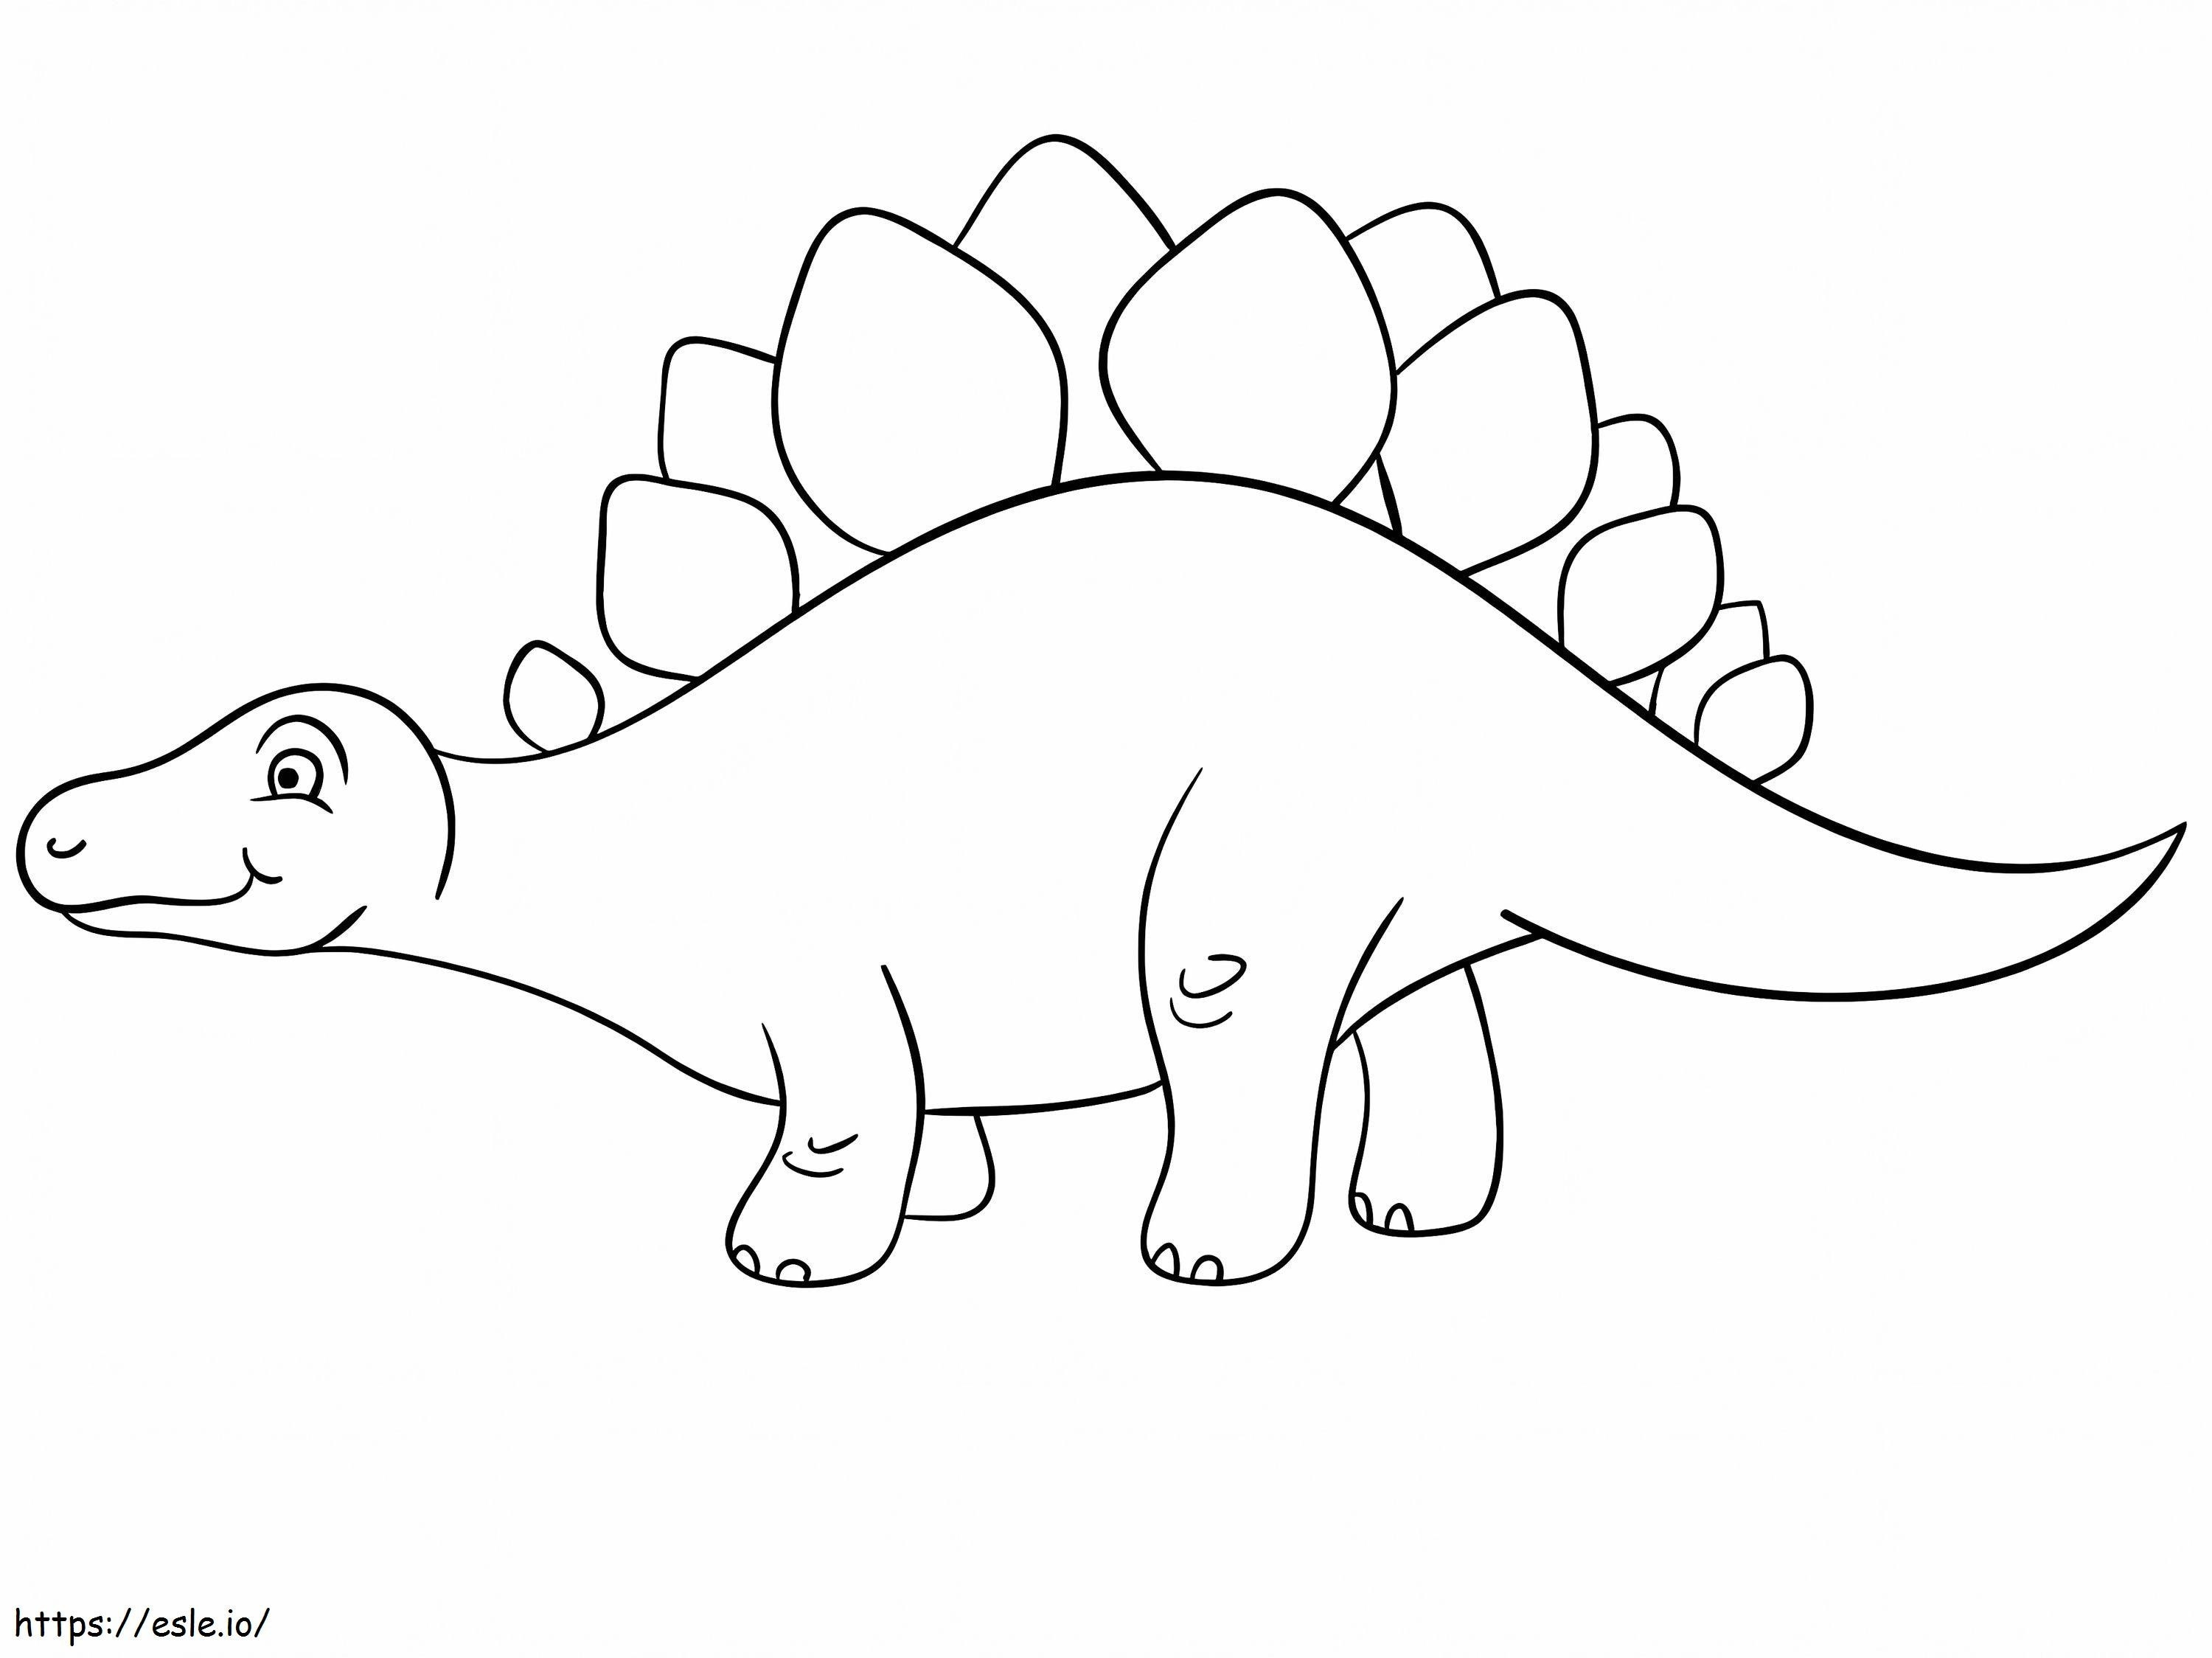 Happy Stegosaurus coloring page